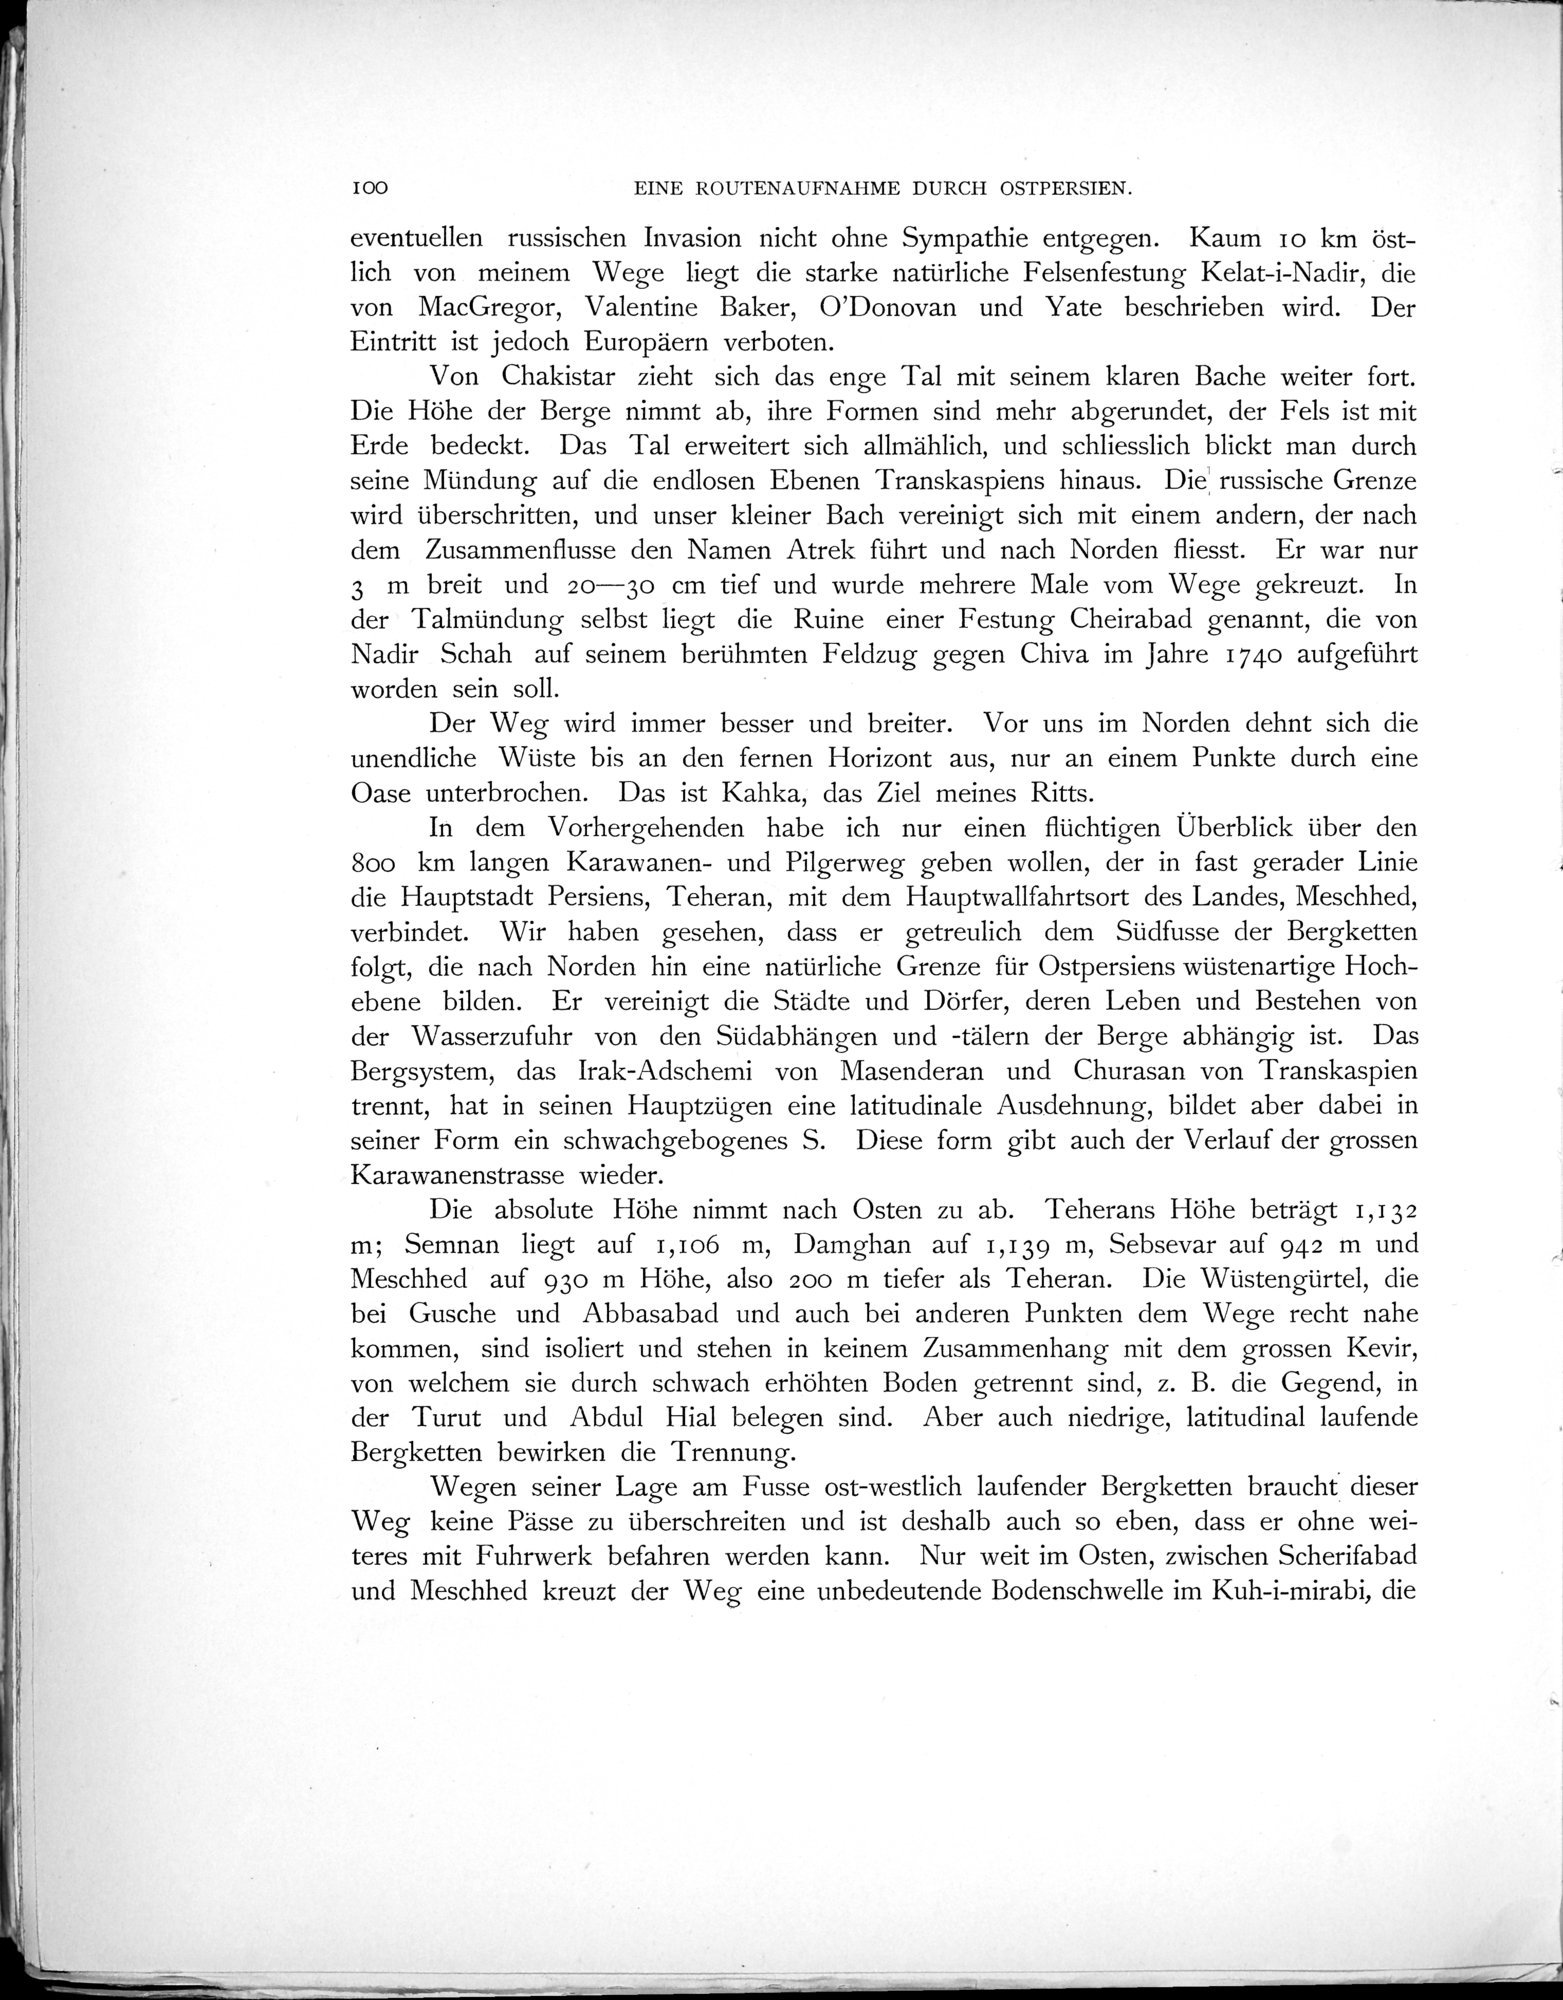 Eine Routenaufnahme durch Ostpersien : vol.1 / Page 282 (Grayscale High Resolution Image)